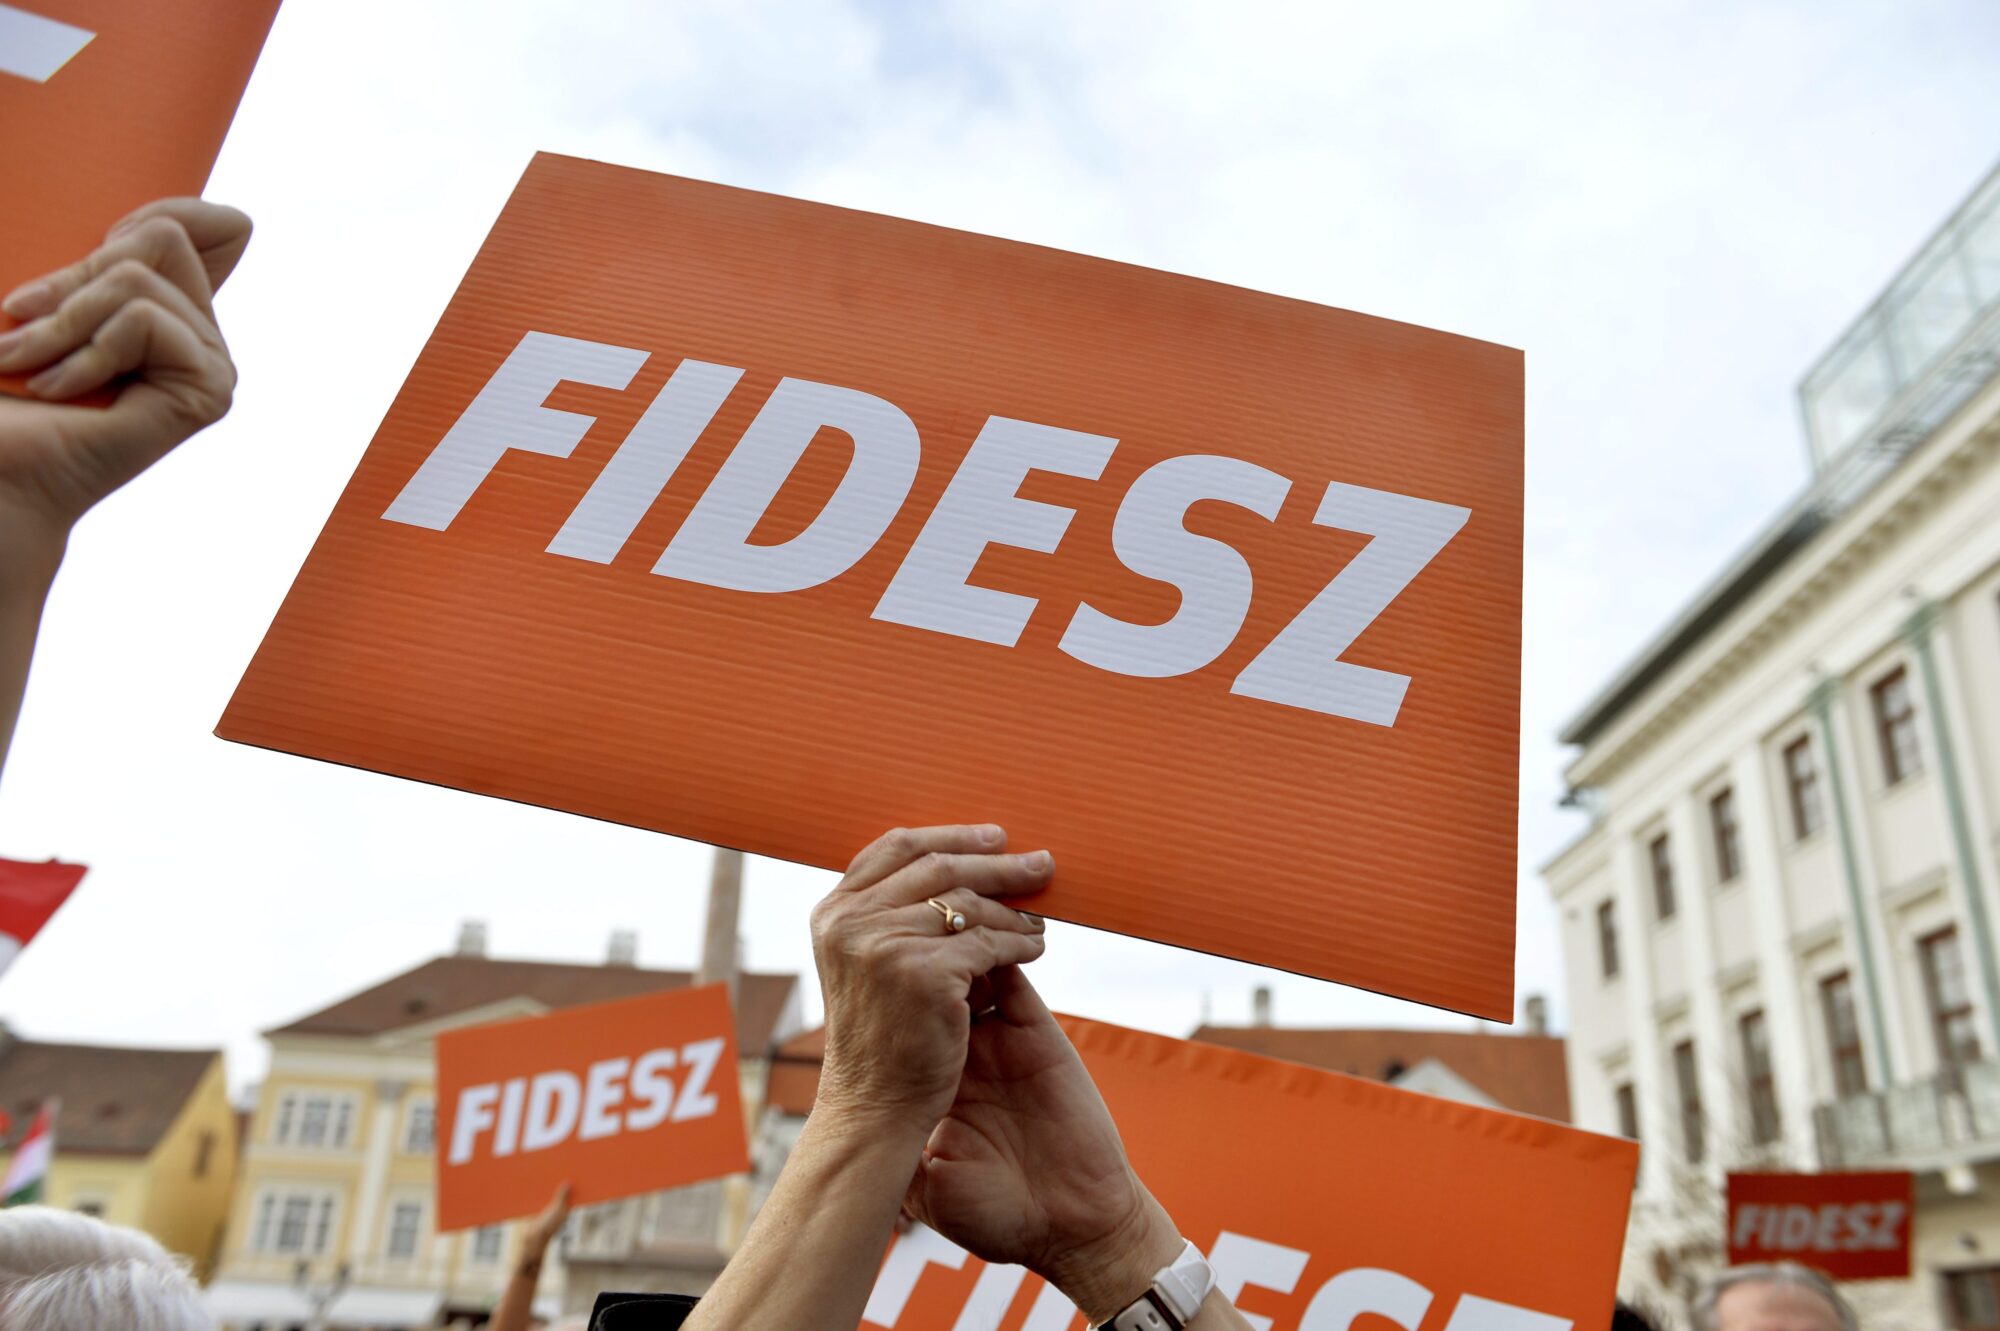 THE ADVANTAGE OF FIDESZ INCREASES